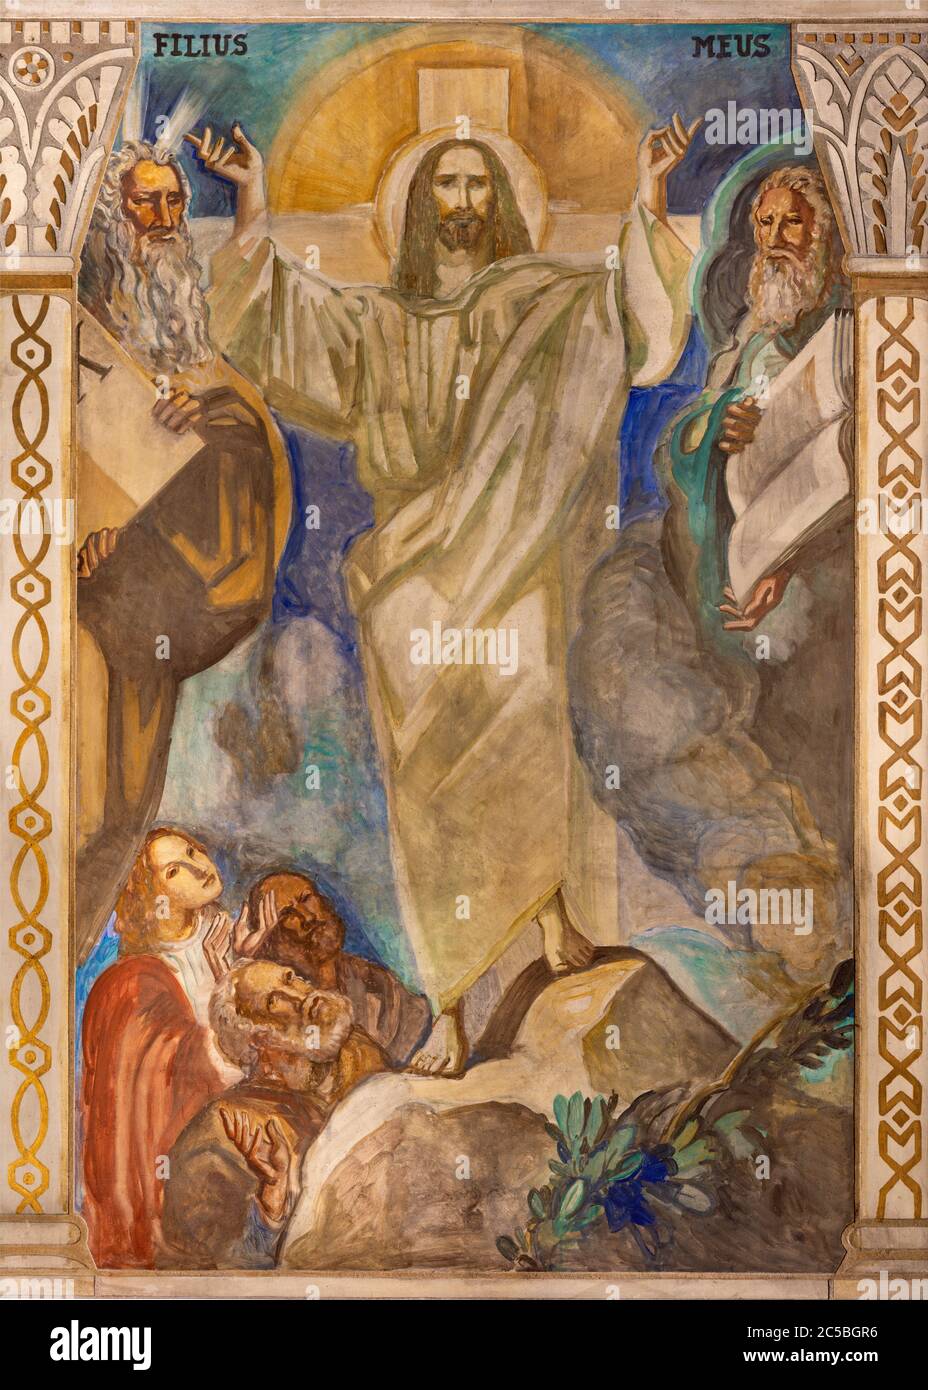 BARCELLONA, SPAGNA - 3 MARZO 2020: L'affresco della Trensfigurazione sul monte Tabor nella chiesa Parroquia Santa Teresa de l'Infant Gesù. Foto Stock